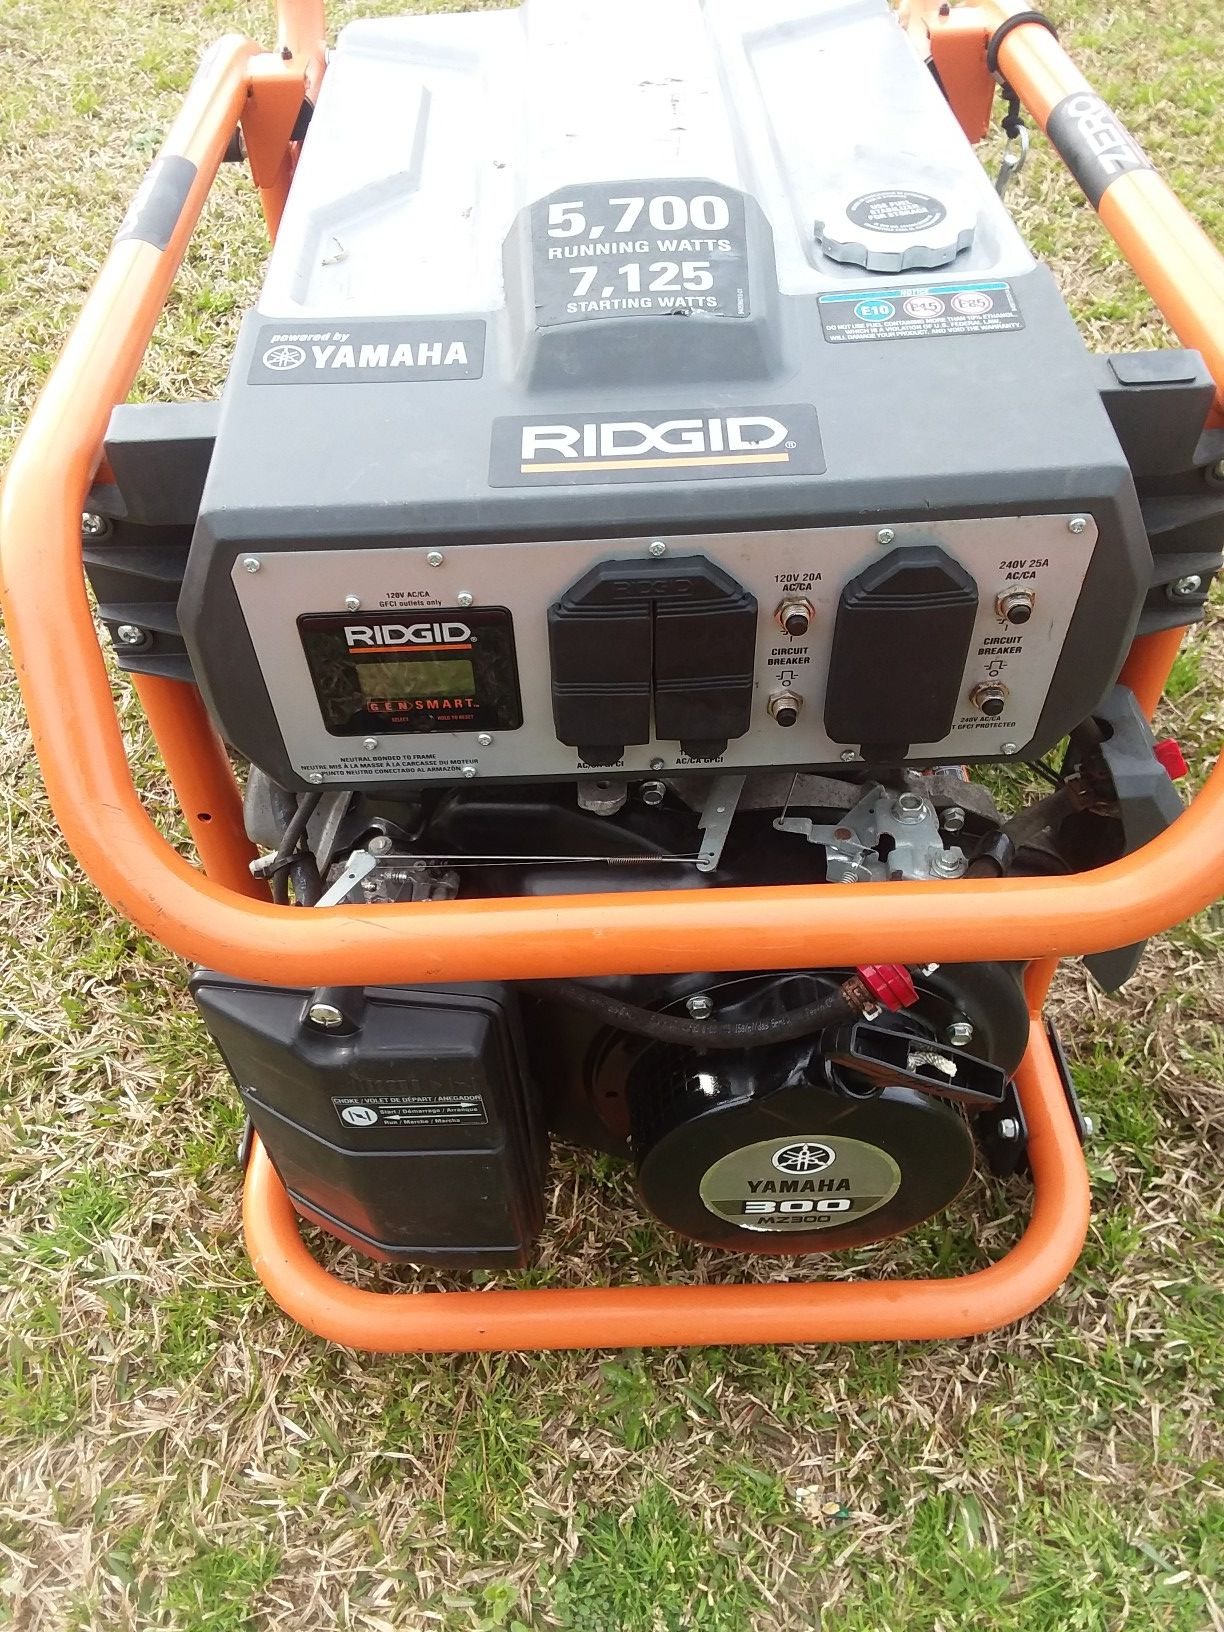 Ridgid generator 5,700 running watts 7,125 starting watts